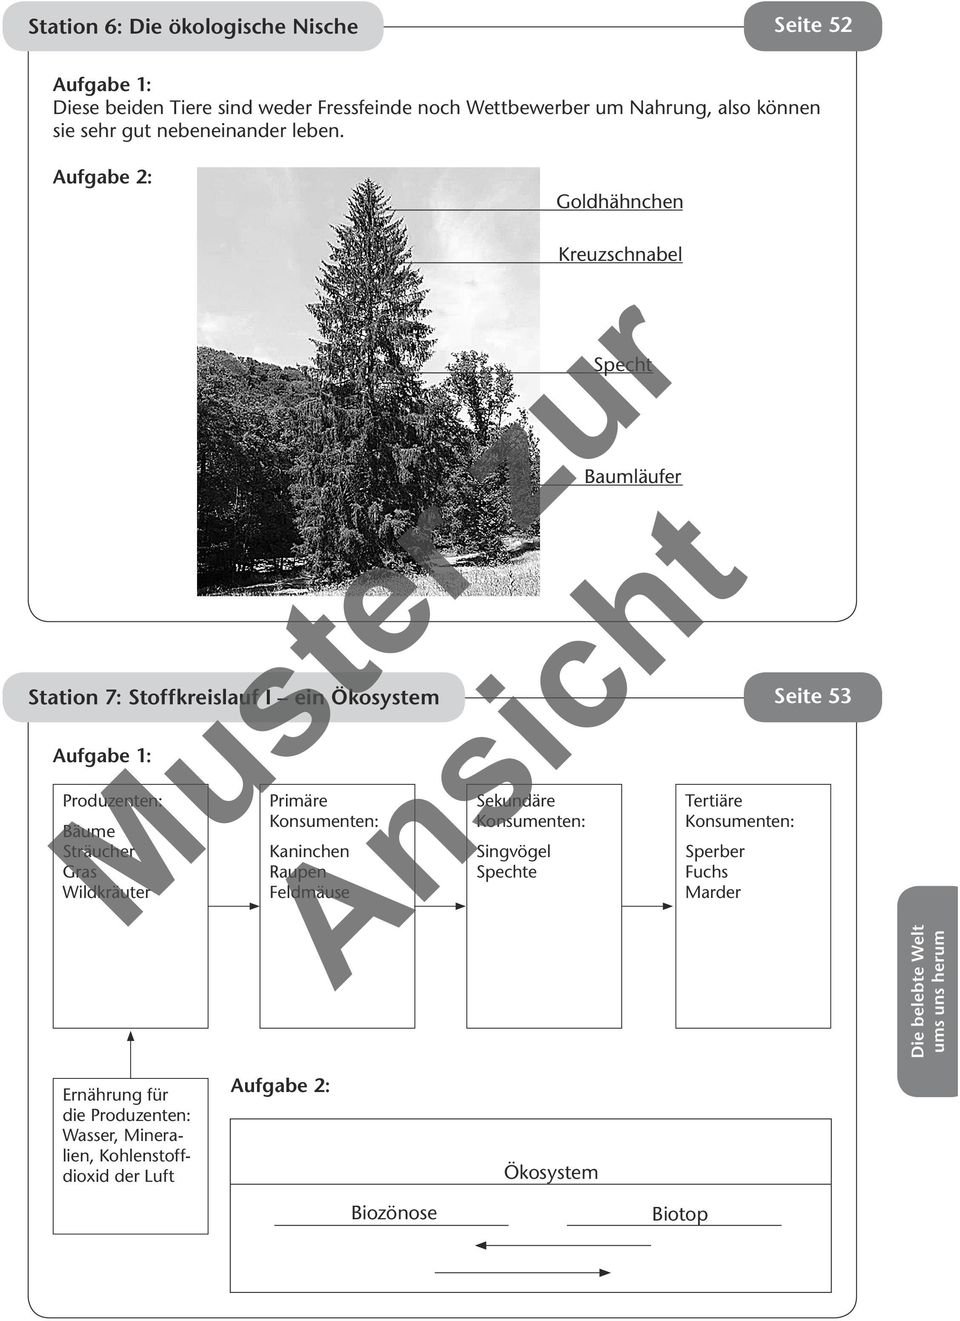 Goldhähnchen Station 7: Stoffkreislauf I ein Ökosystem Seite 53 Produzenten: Bäume Sträucher Gras Wildkräuter Primäre Konsumenten: